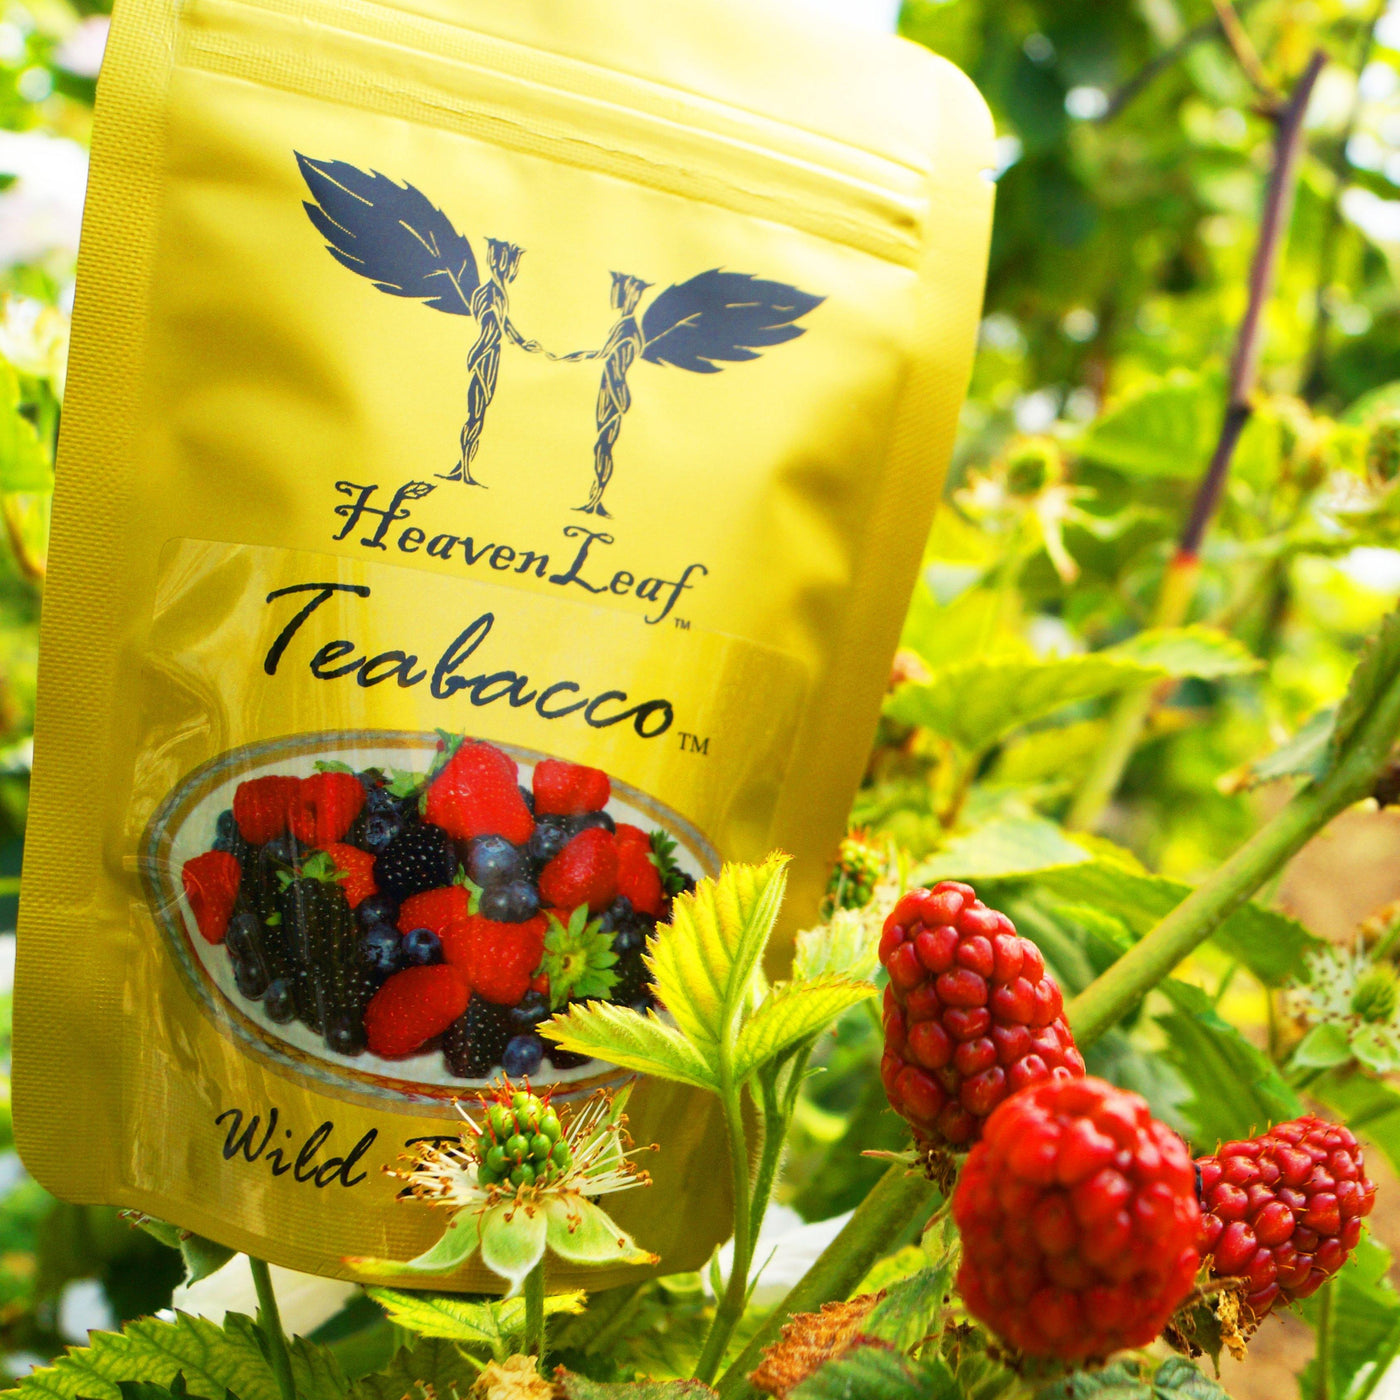 (W) Berry Teabacco